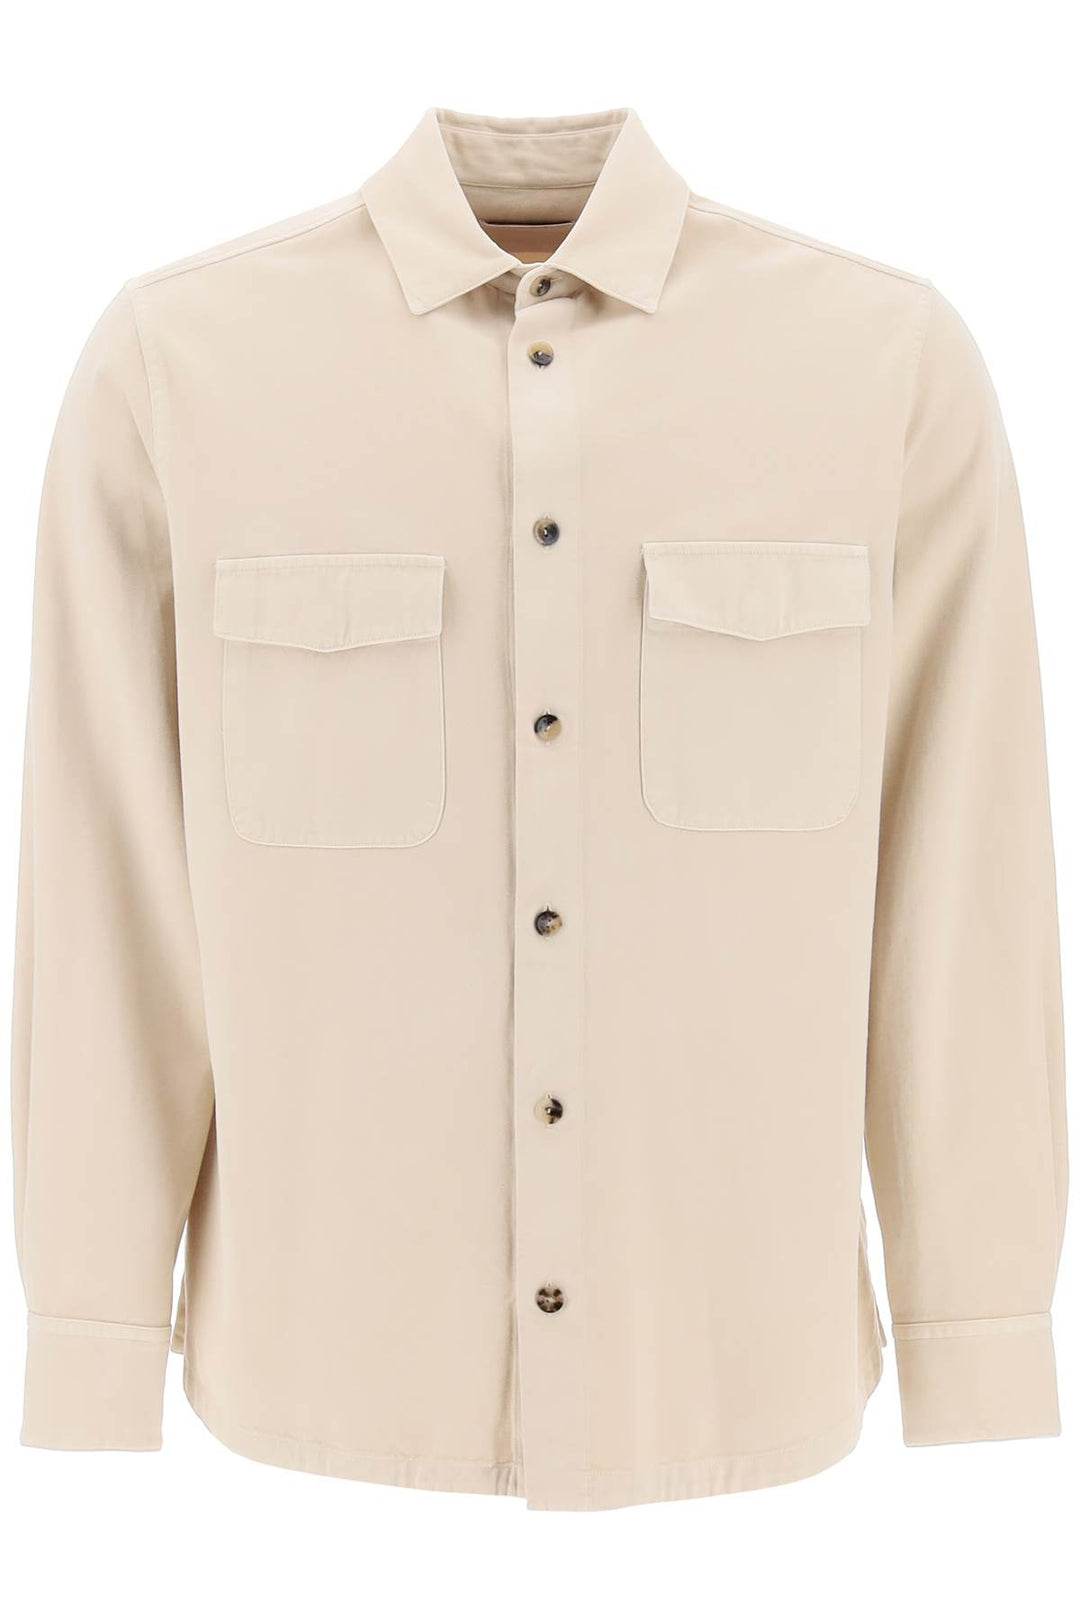 Agnona cotton & cashmere shirt-0